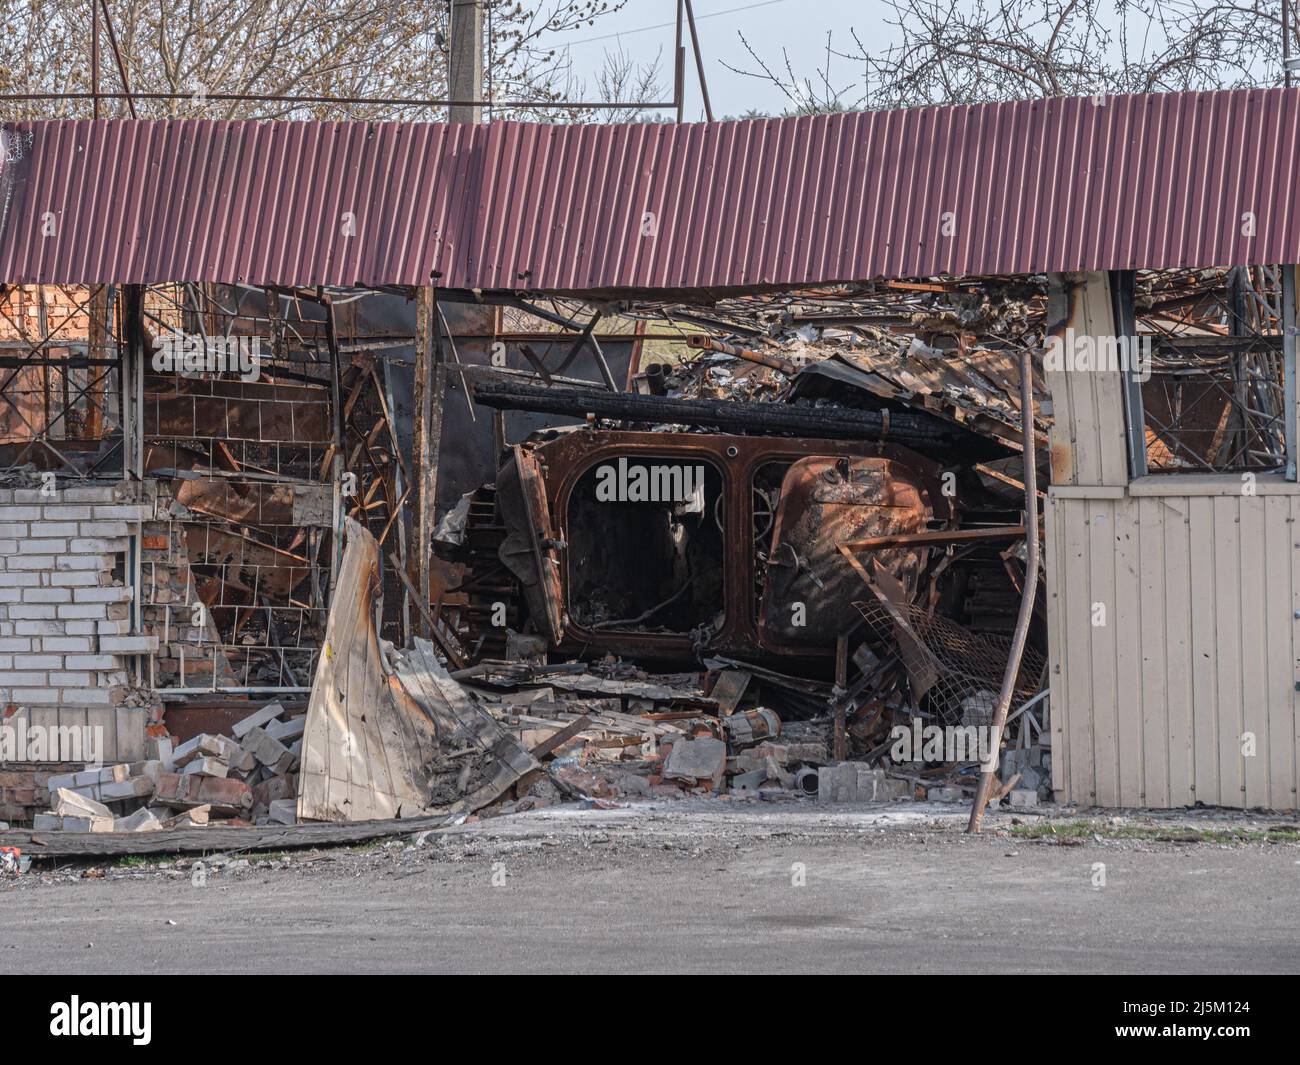 Equipo militar quemado y destruido en Ucrania. BMP ruso quemado por el ejército ucraniano. Tanques rotos y vehículos de combate de los invasores rusos en la aldea de Borodyanka, región de Kiev, Ucrania. Foto de stock